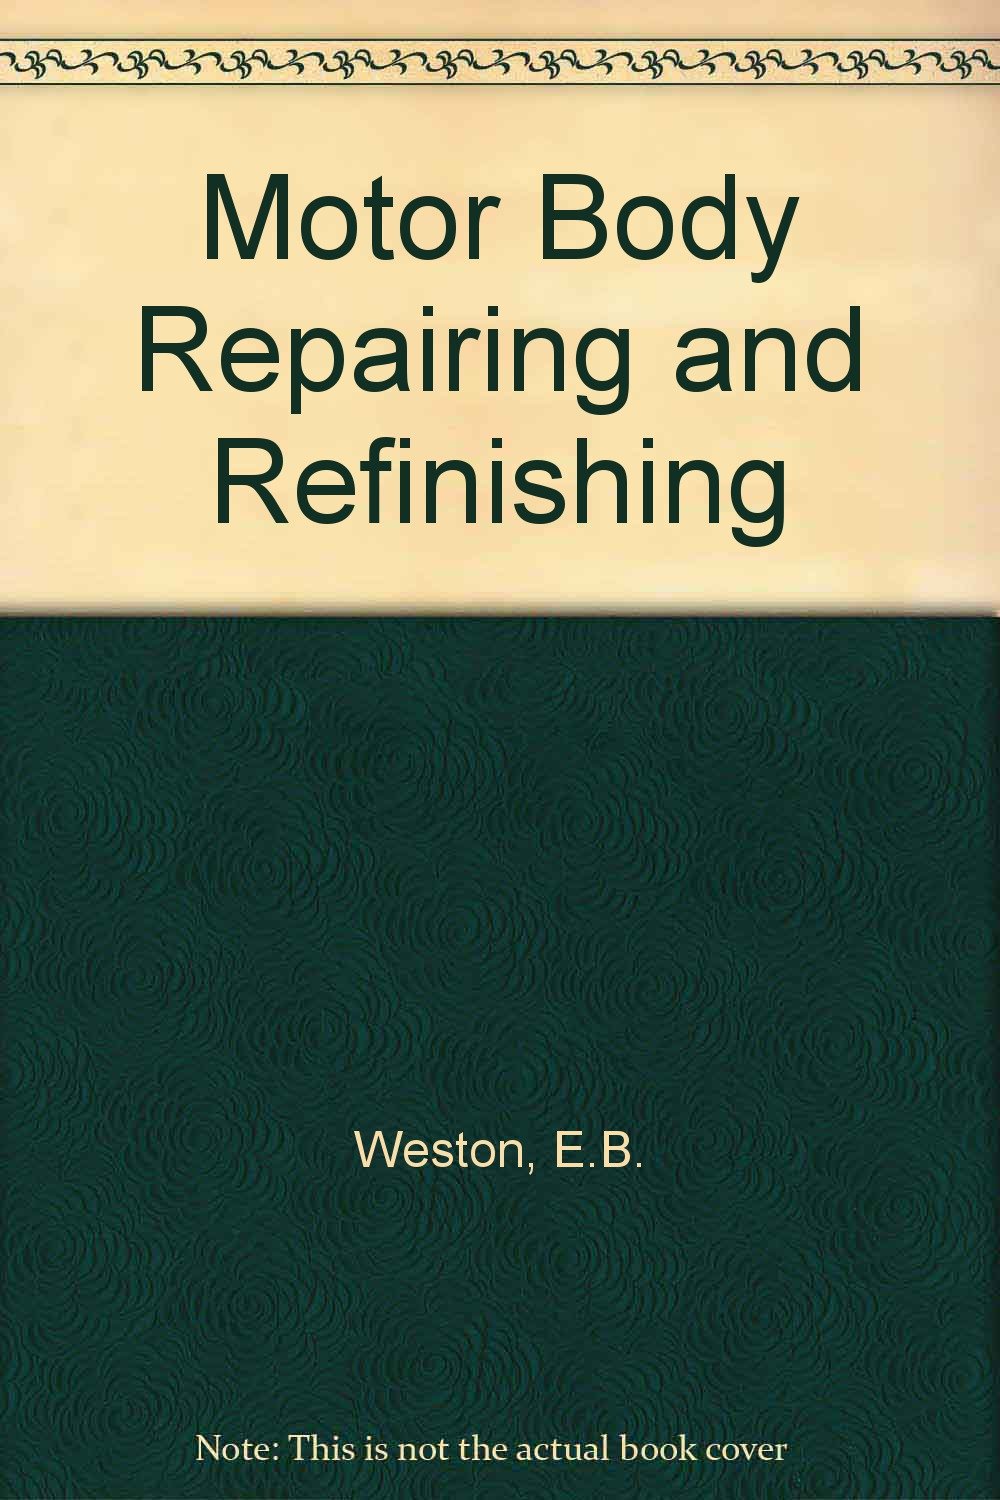 Motor Body Repairing and Refinishing Weston, E.B.